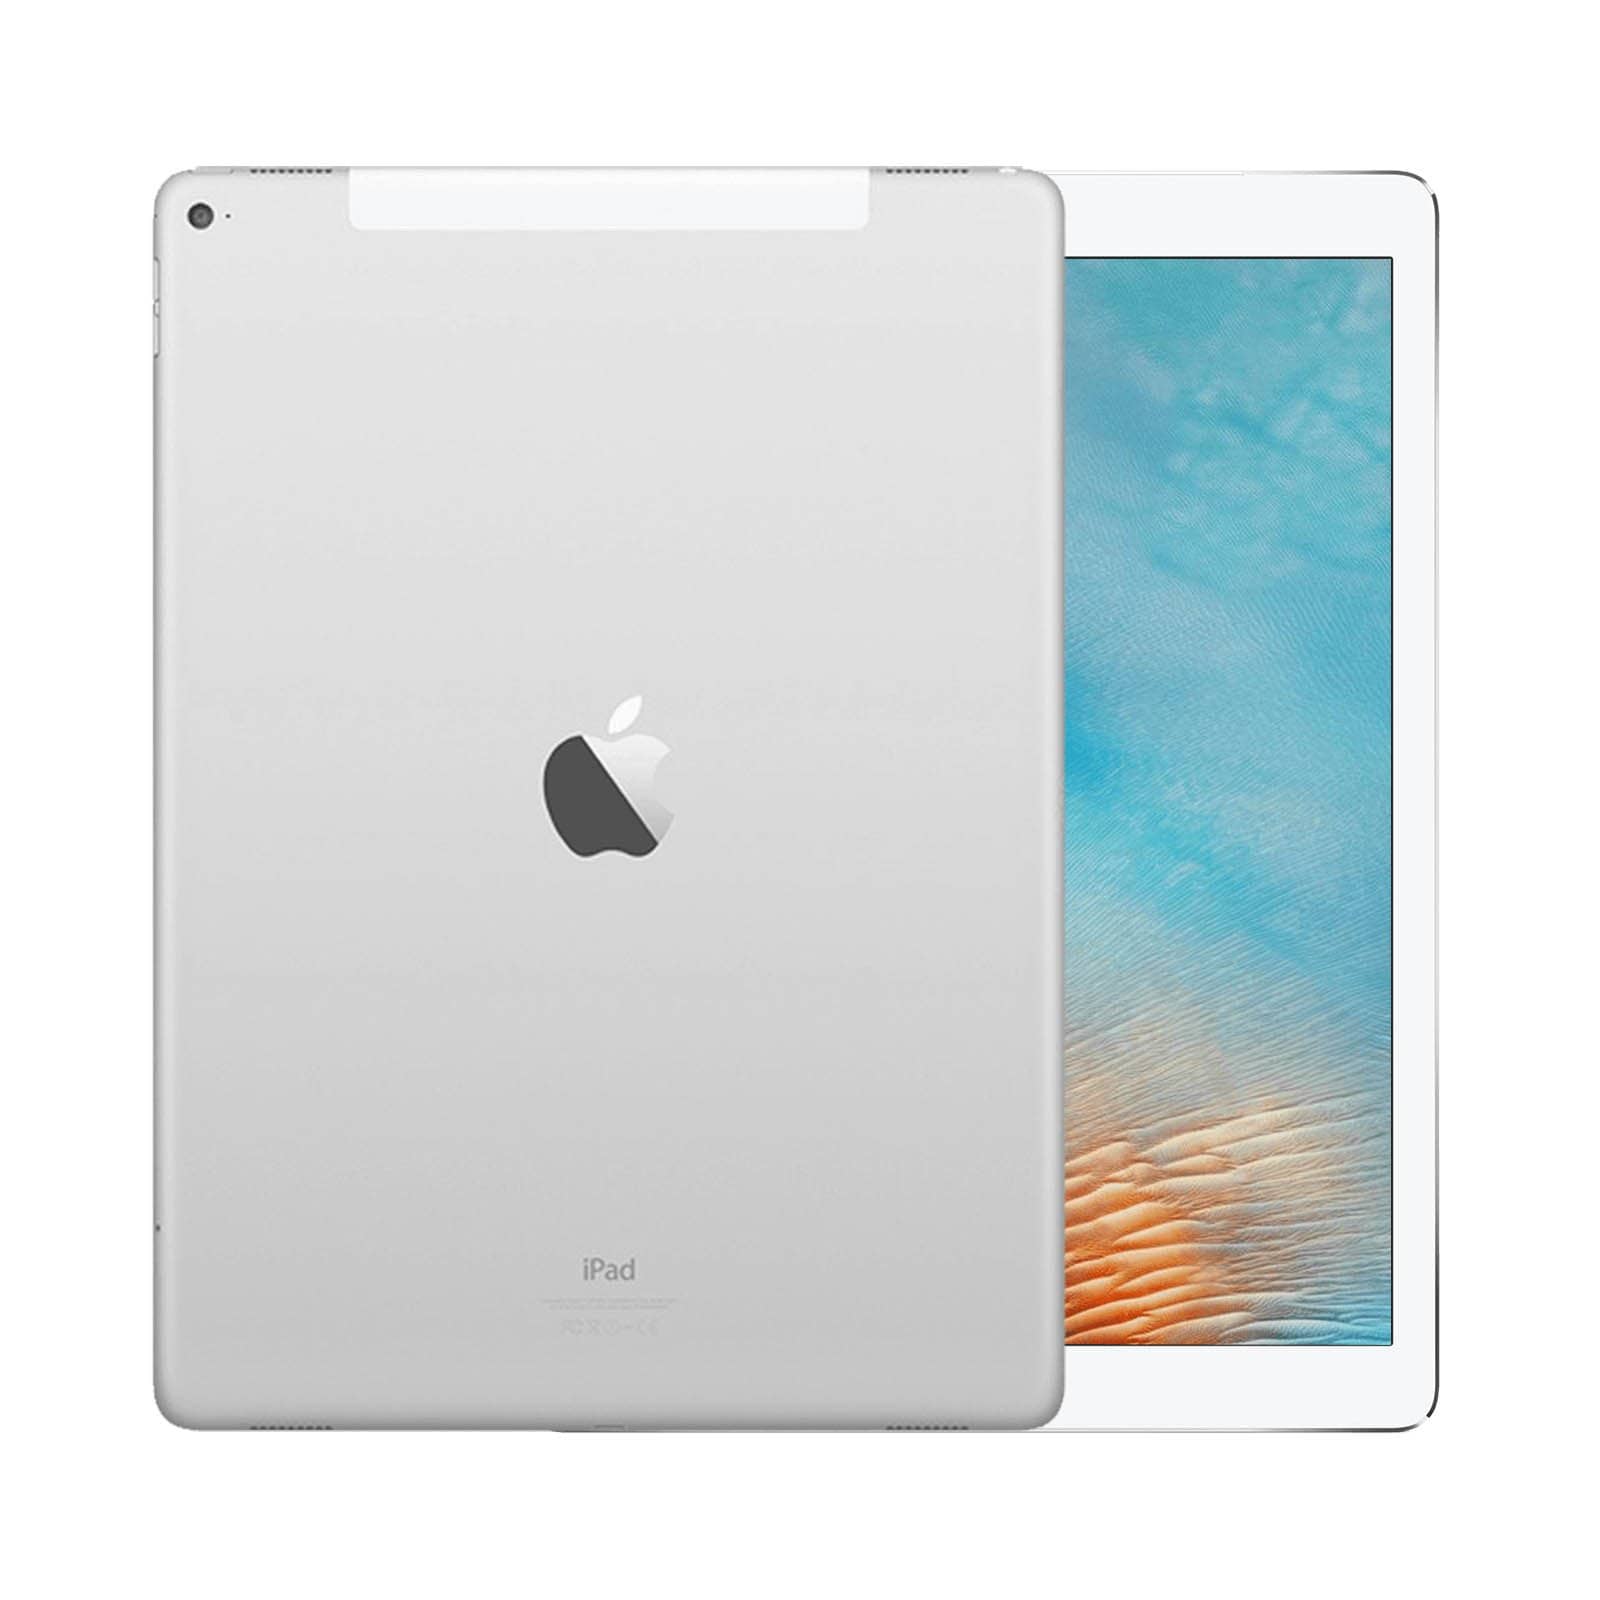 iPad Pro 12.9 Inch 2nd Gen 256GB Silver Pristine - WiFi 256GB Silver Pristine